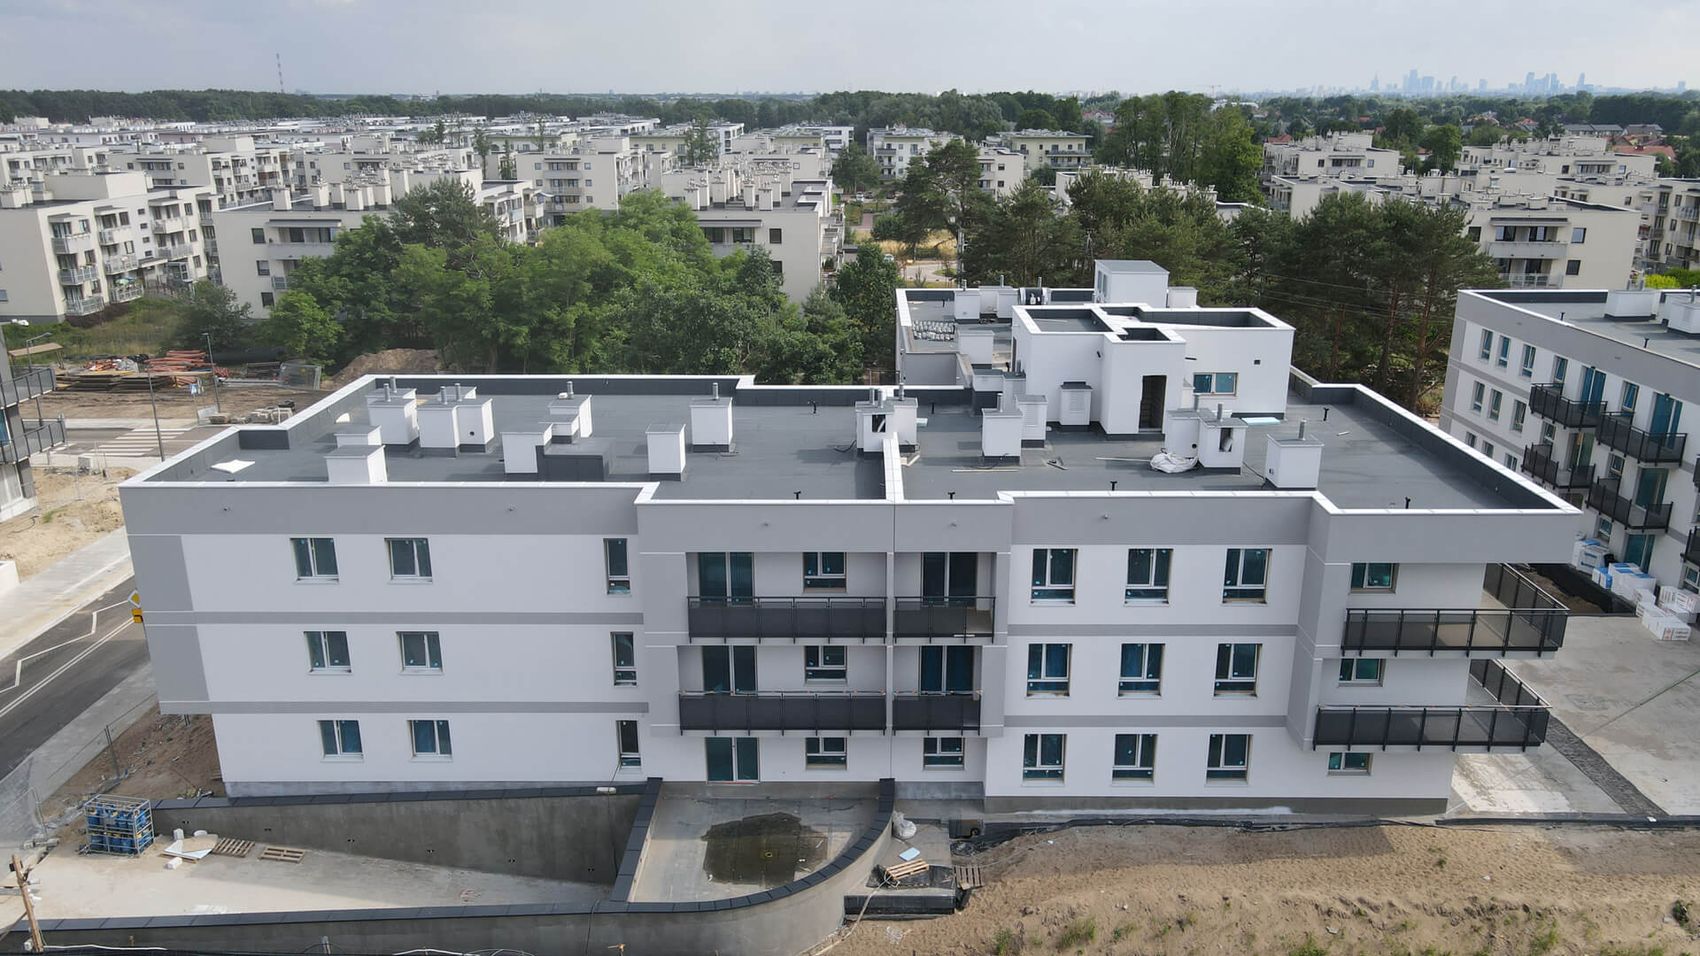 Olchowy Park - postęp prac na osiedlu Victoria Dom